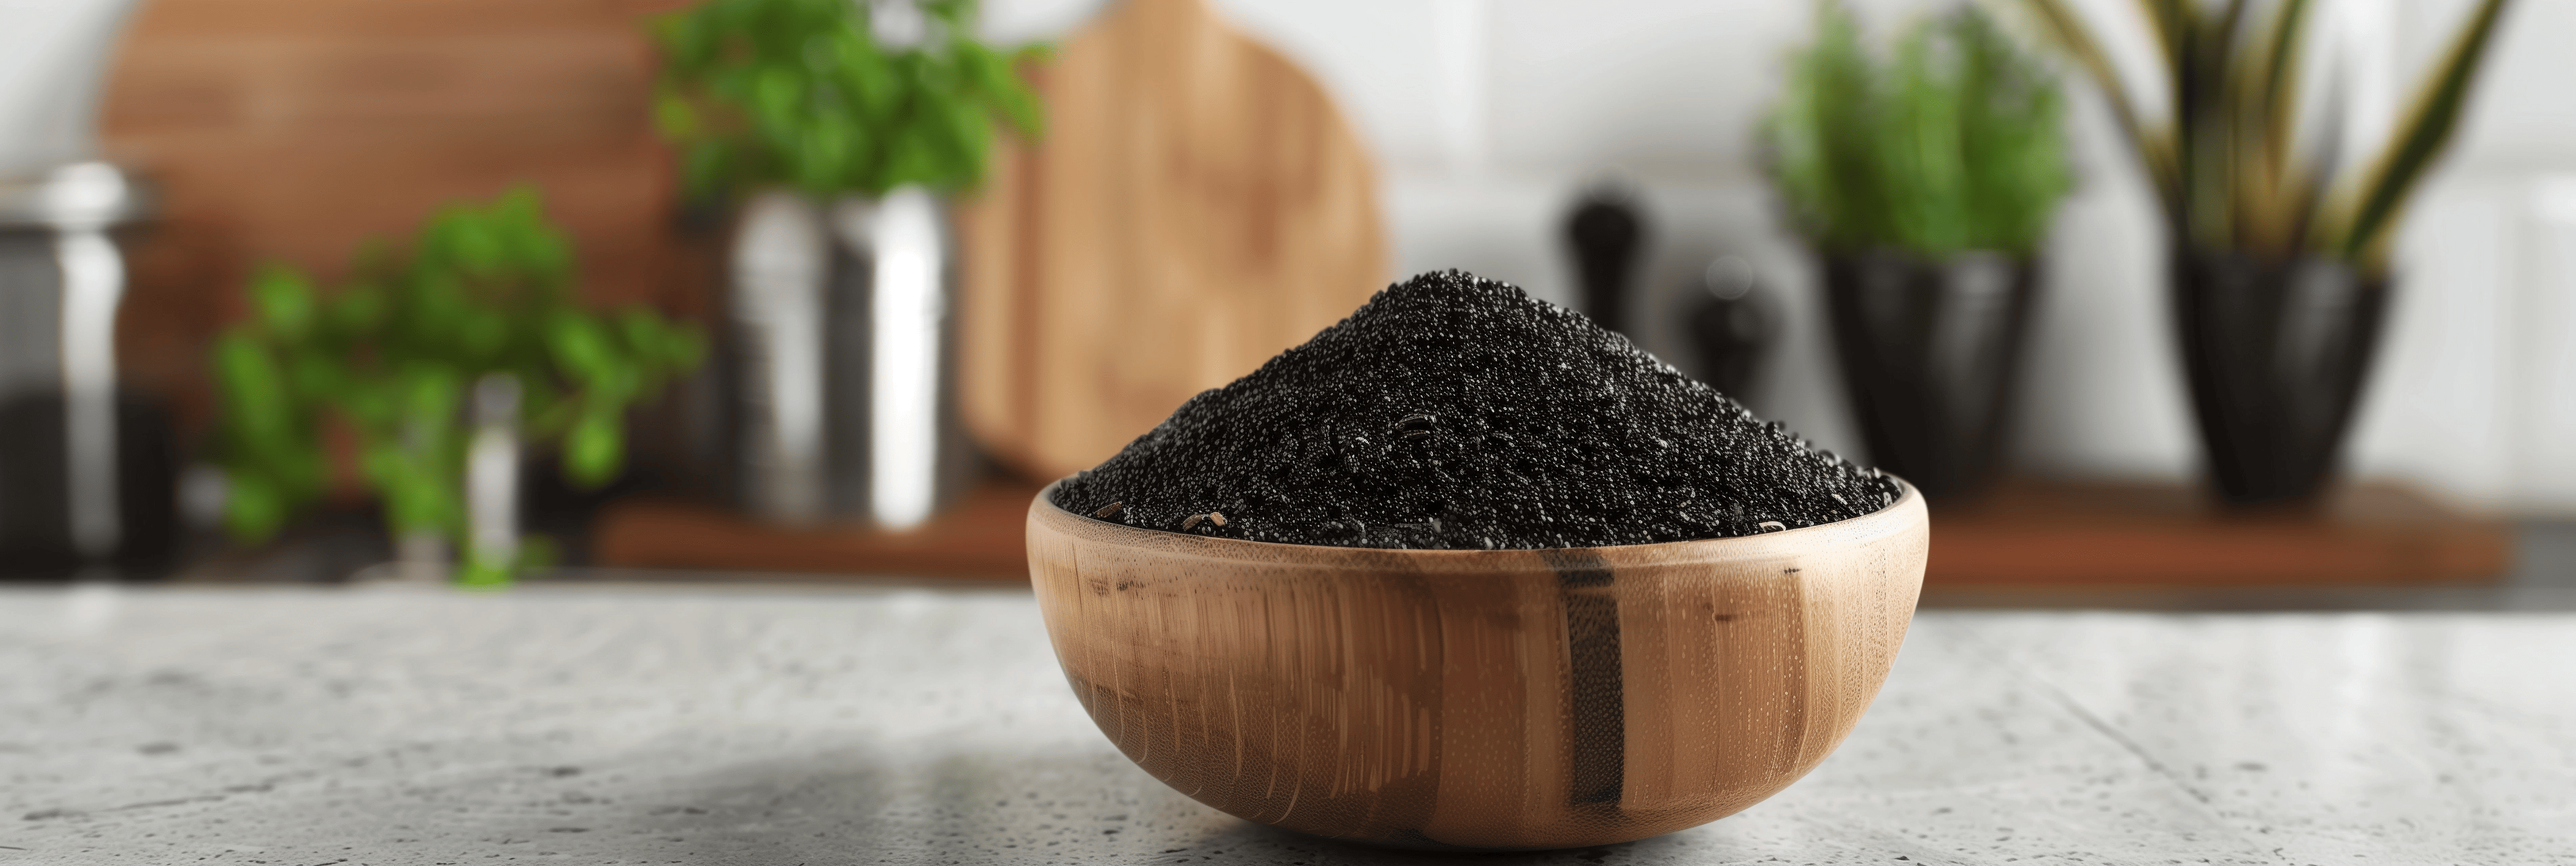 Is black cumin seed dangerous?